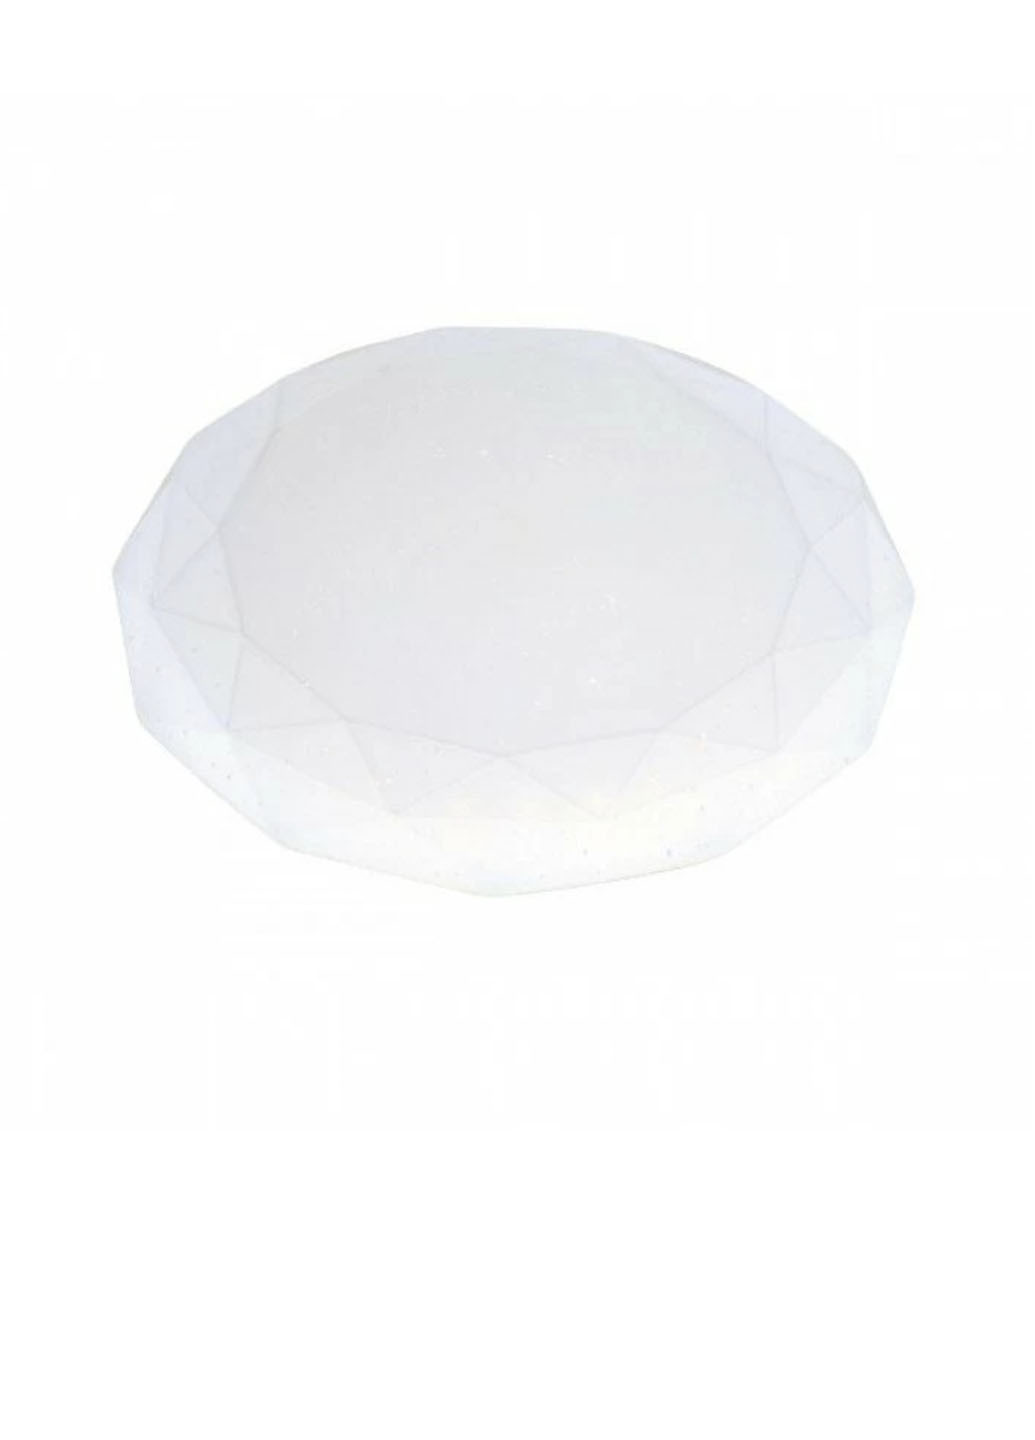 Cветильник потолочный LED 6400K 1125lm Белый (meg0270040024) Solar Horoz Epsilon 24 W 027-004-0024 белый